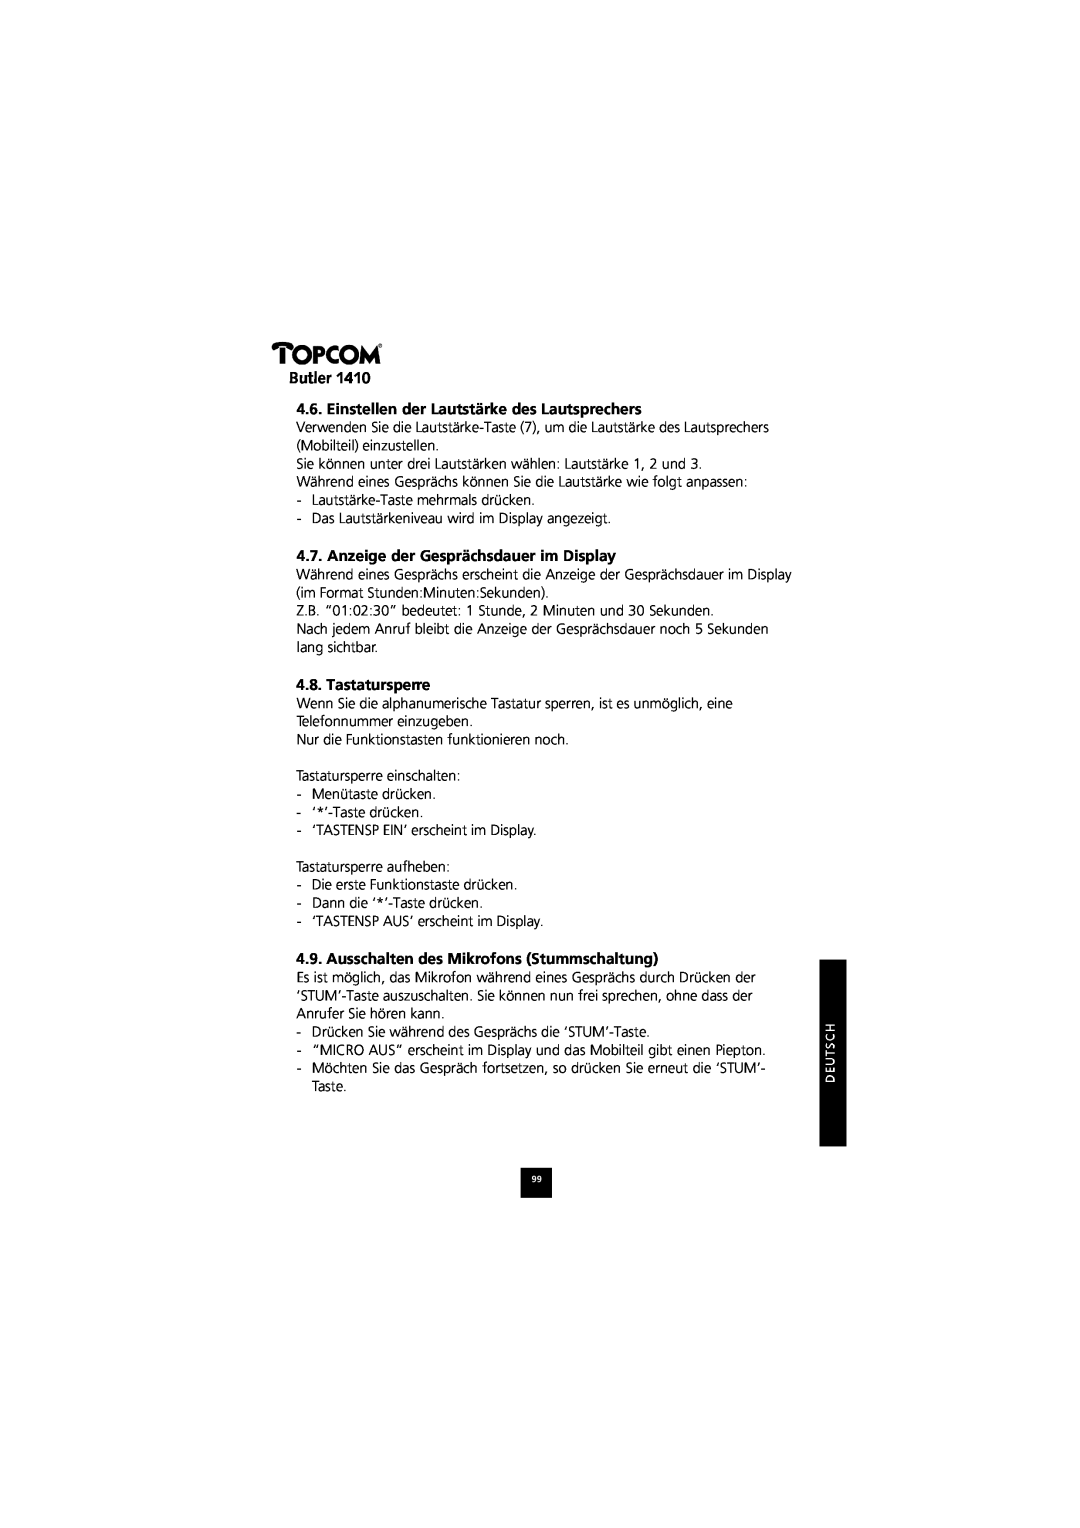 Topcom 1410 Einstellen der Lautstärke des Lautsprechers, Anzeige der Gesprächsdauer im Display, Tastatursperre, Butler 